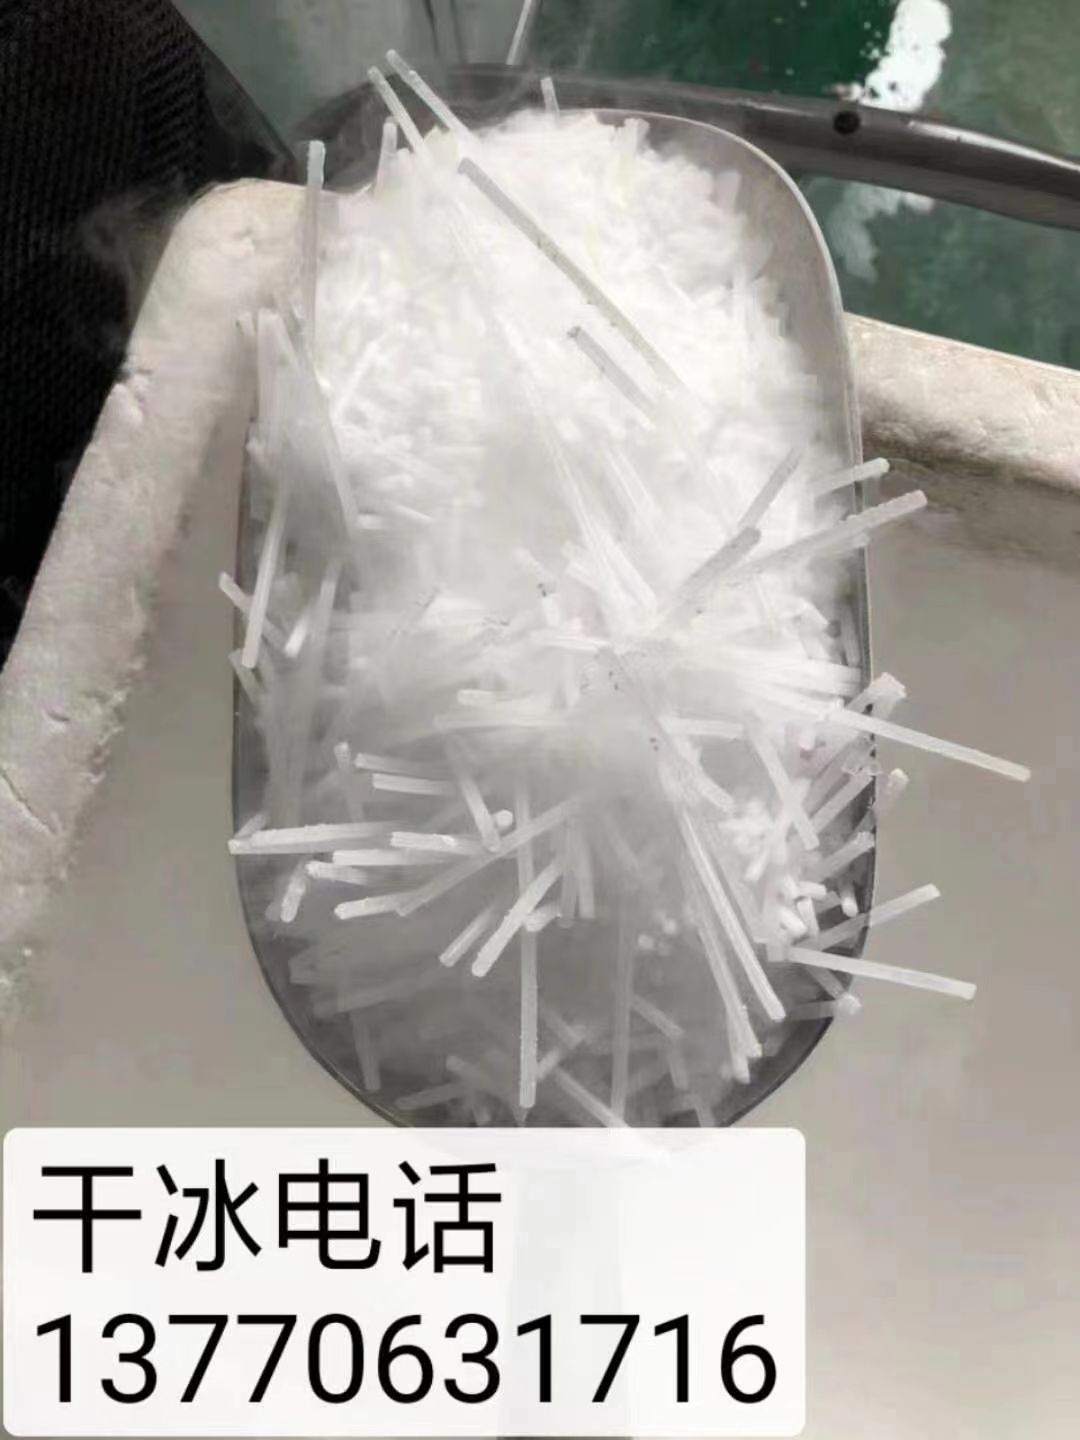 南京干冰 南京干冰厂家 南京干冰公司 干冰批发